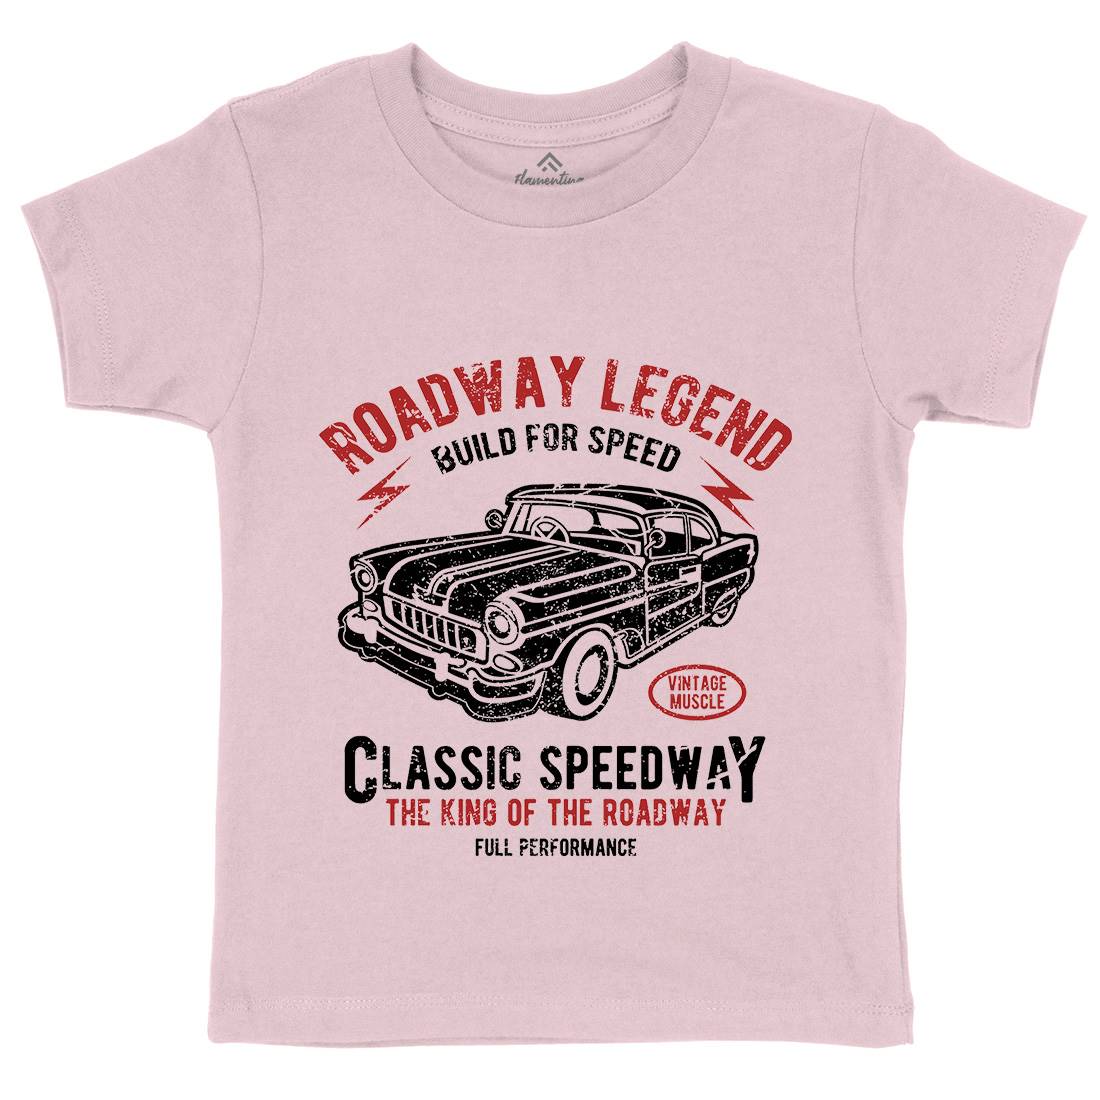 Roadway Legend Kids Organic Crew Neck T-Shirt Cars A124